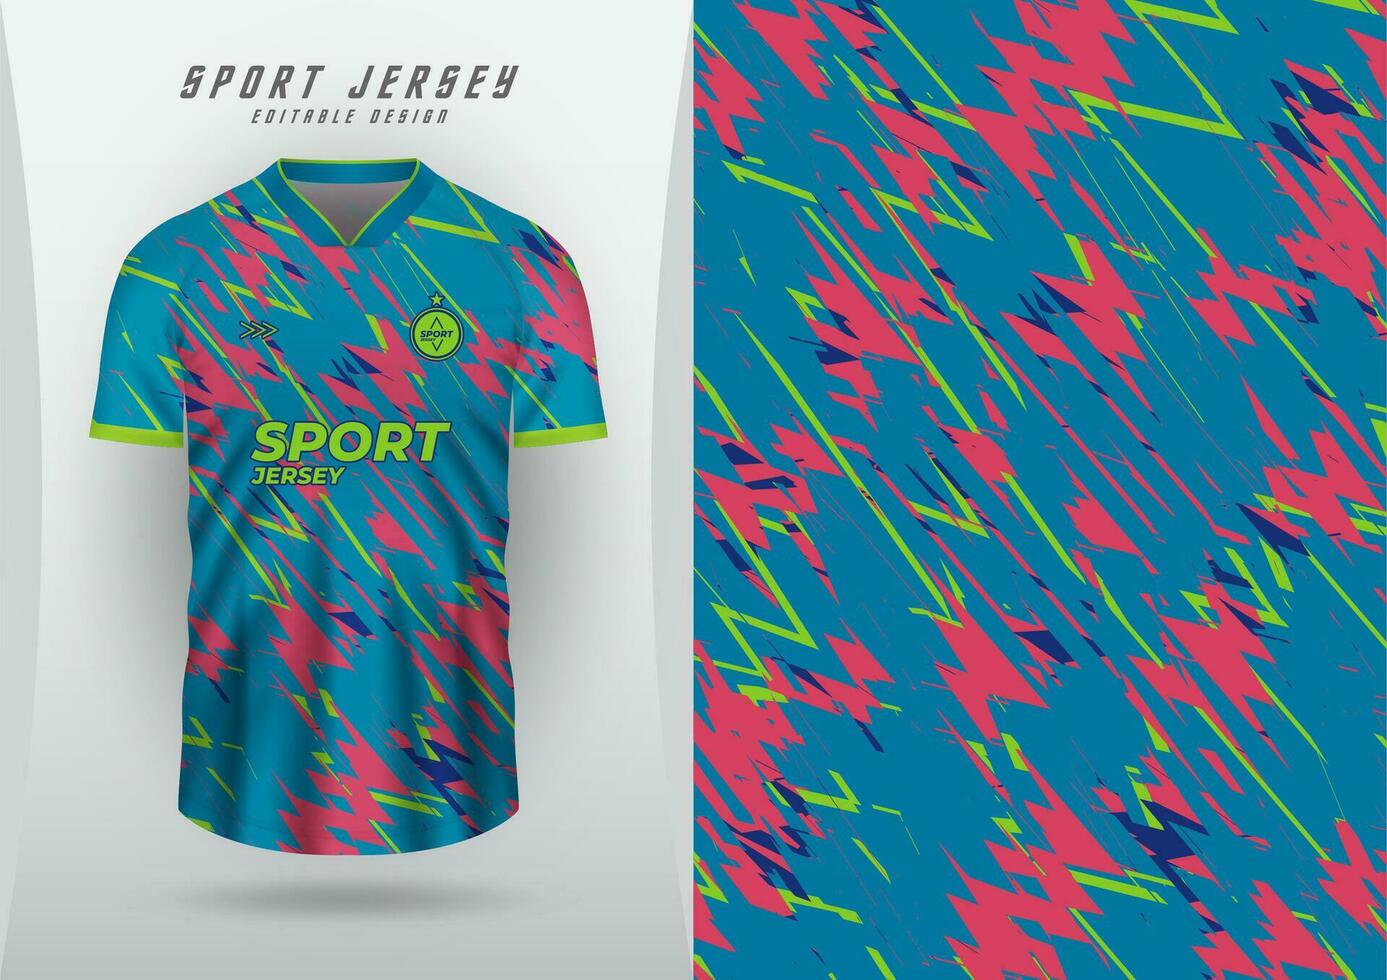 achtergrond voor sport- Jersey, voetbal Jersey, rennen Jersey, racing Jersey, blauw, groen en roze patroon. vector